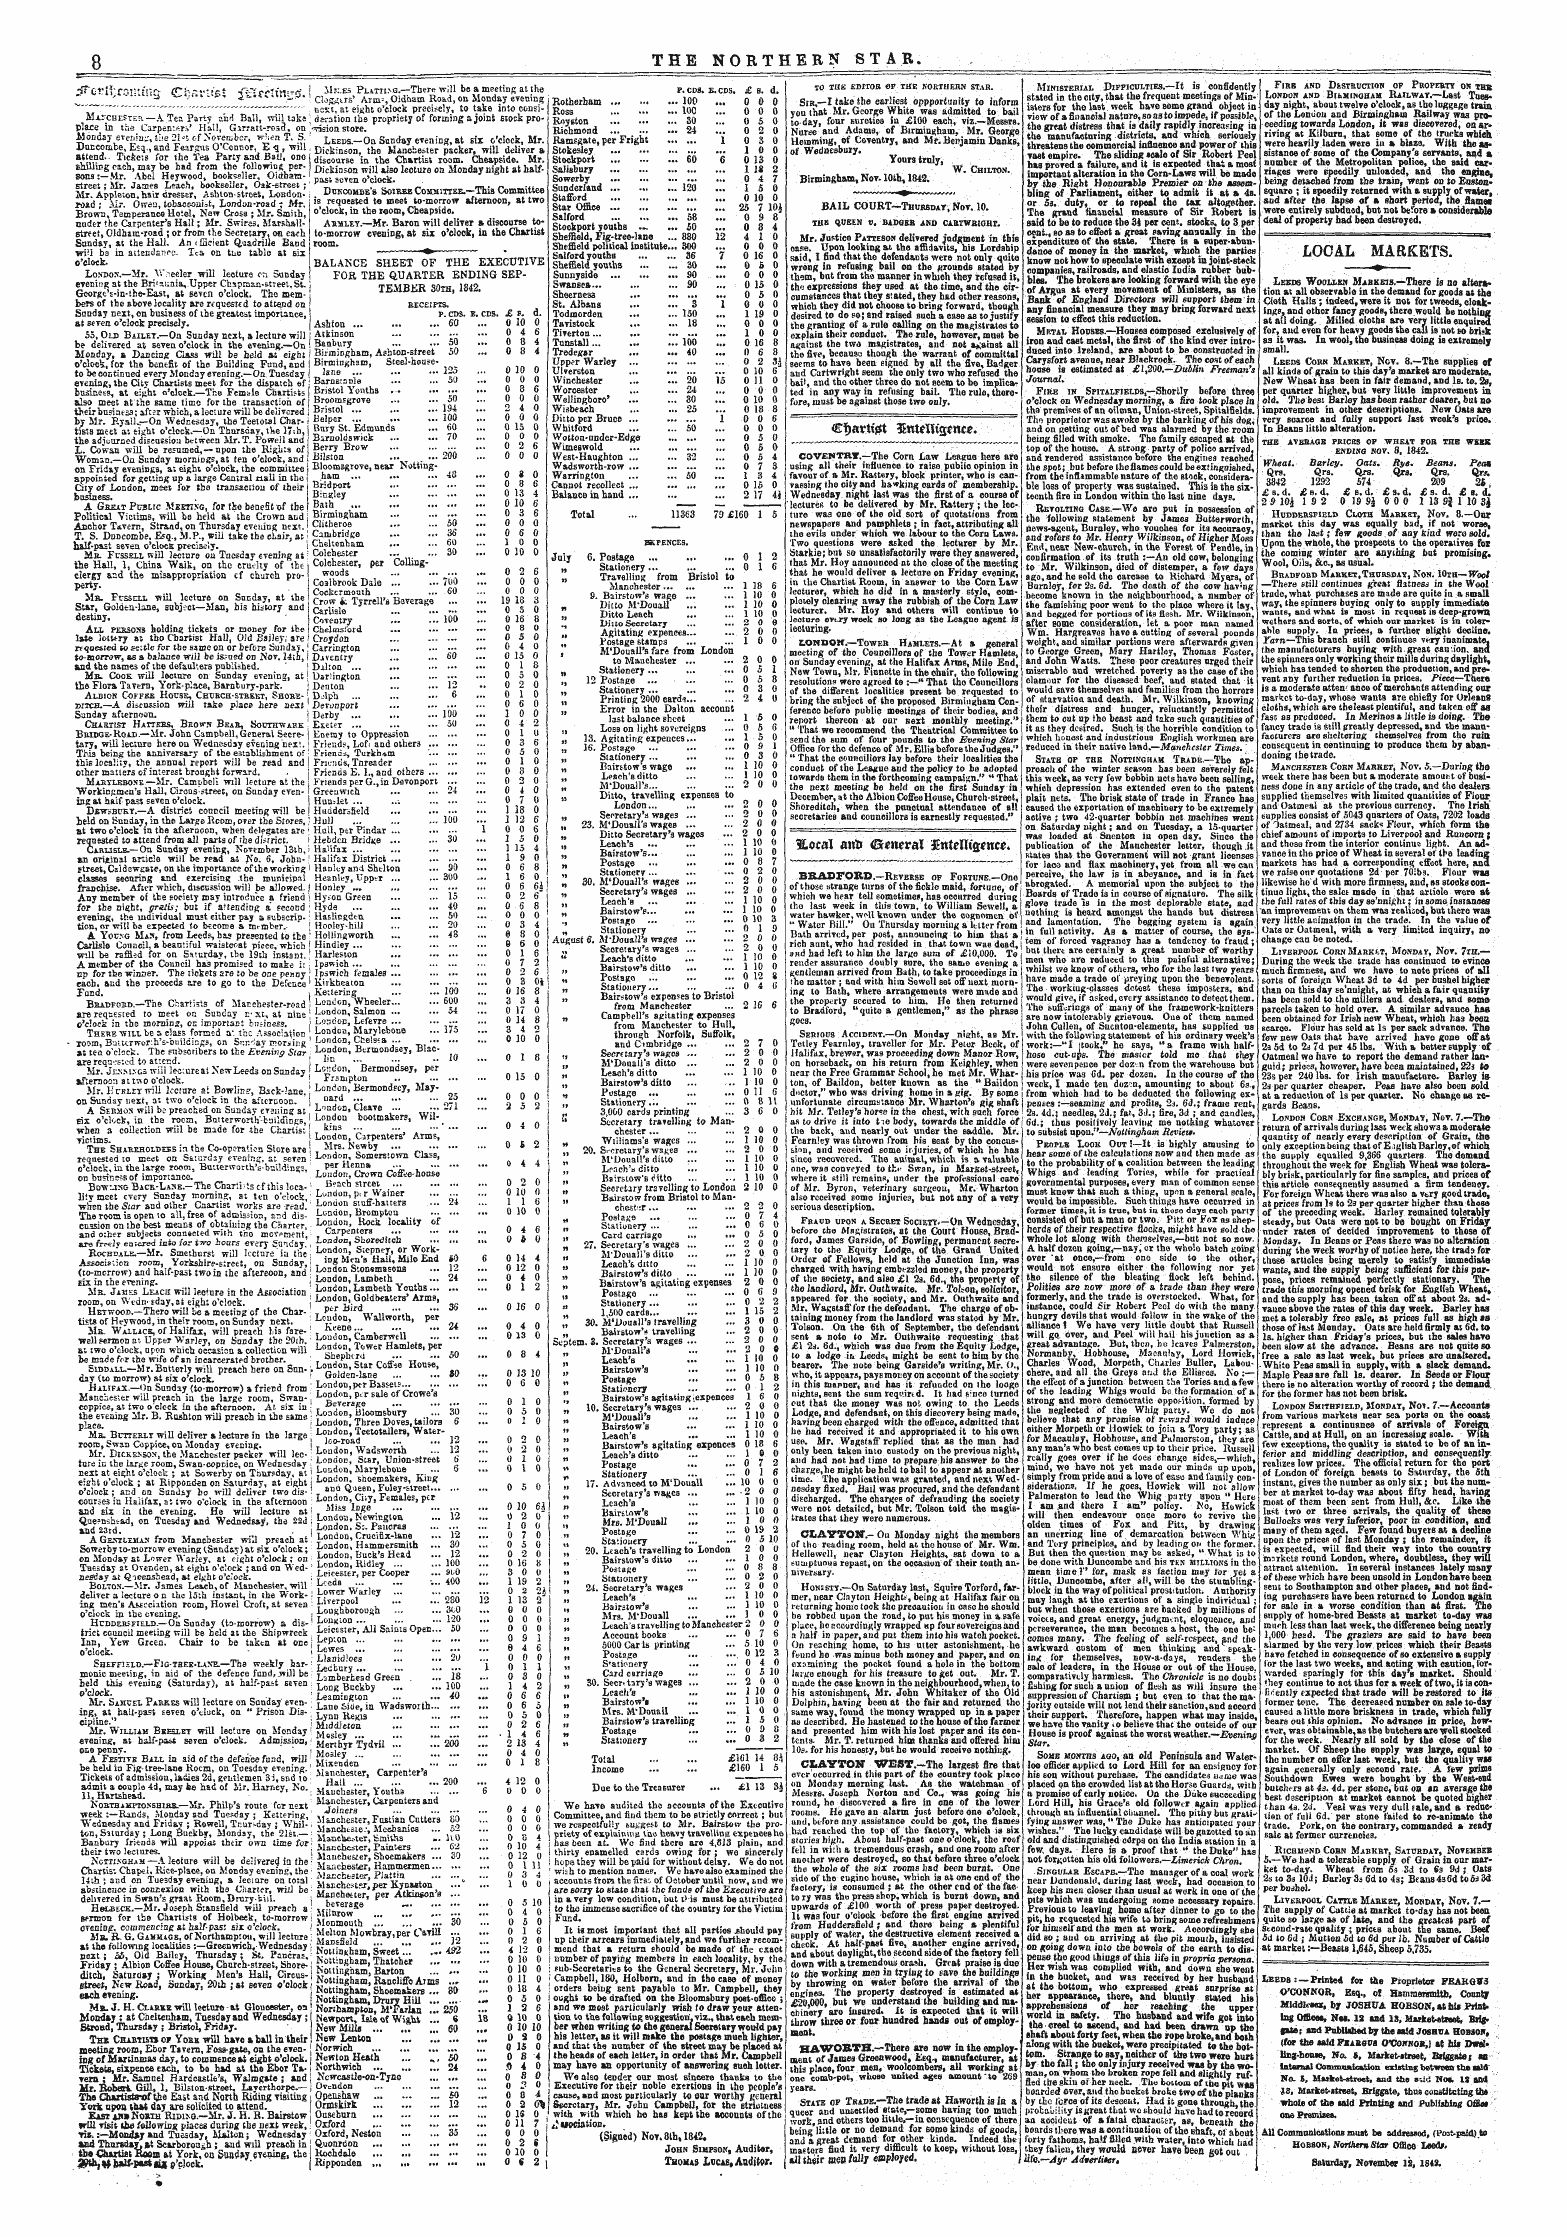 Northern Star (1837-1852): jS F Y, 3rd edition - Hocat Anti Gawrai'xrtehfgttreit;